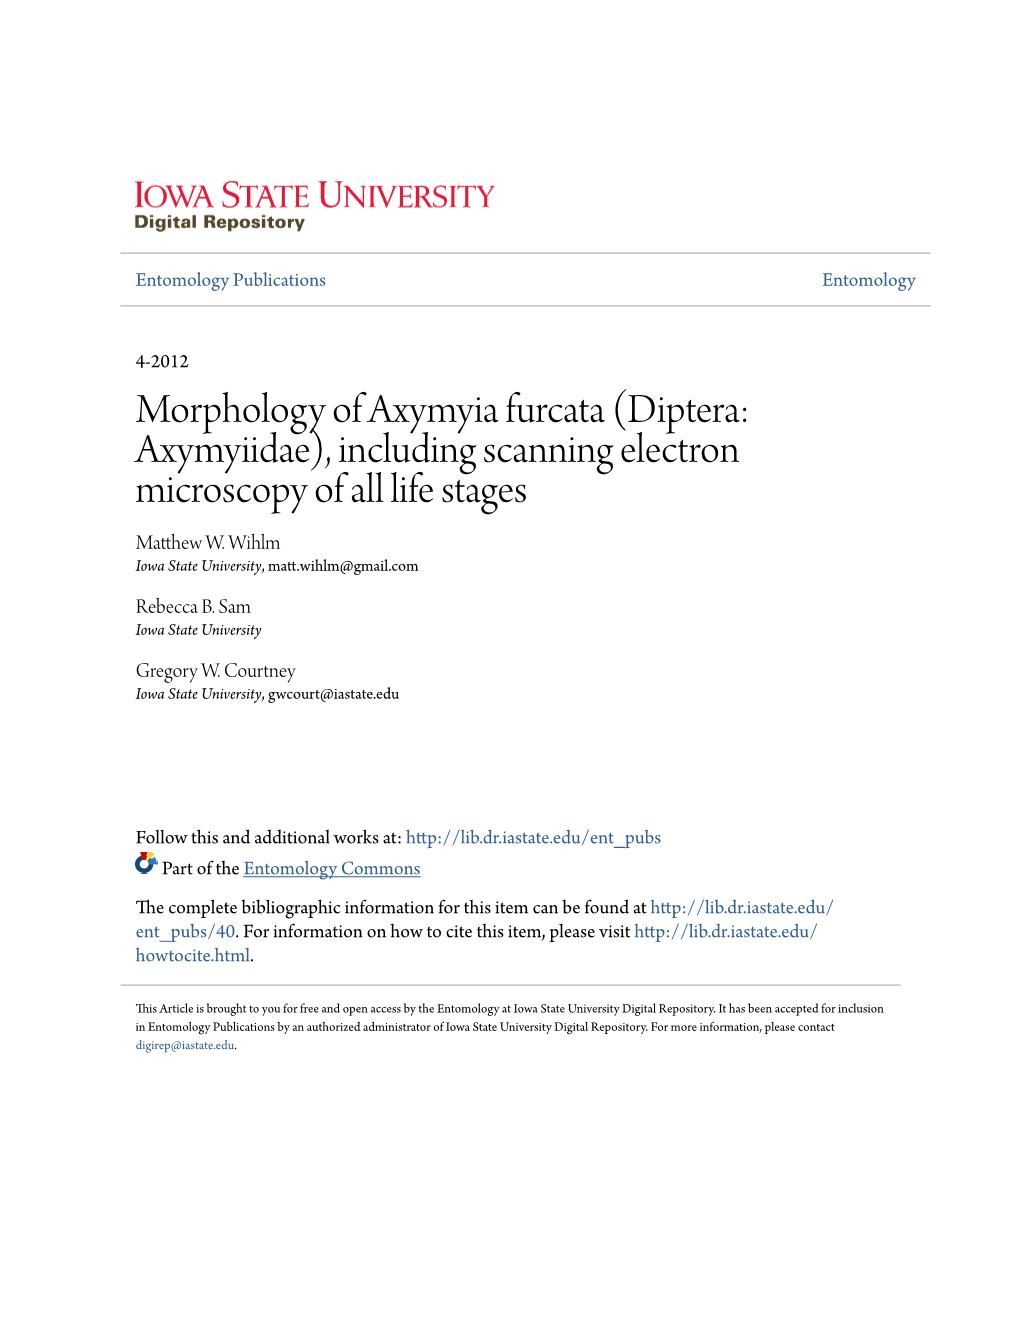 Morphology of Axymyia Furcata